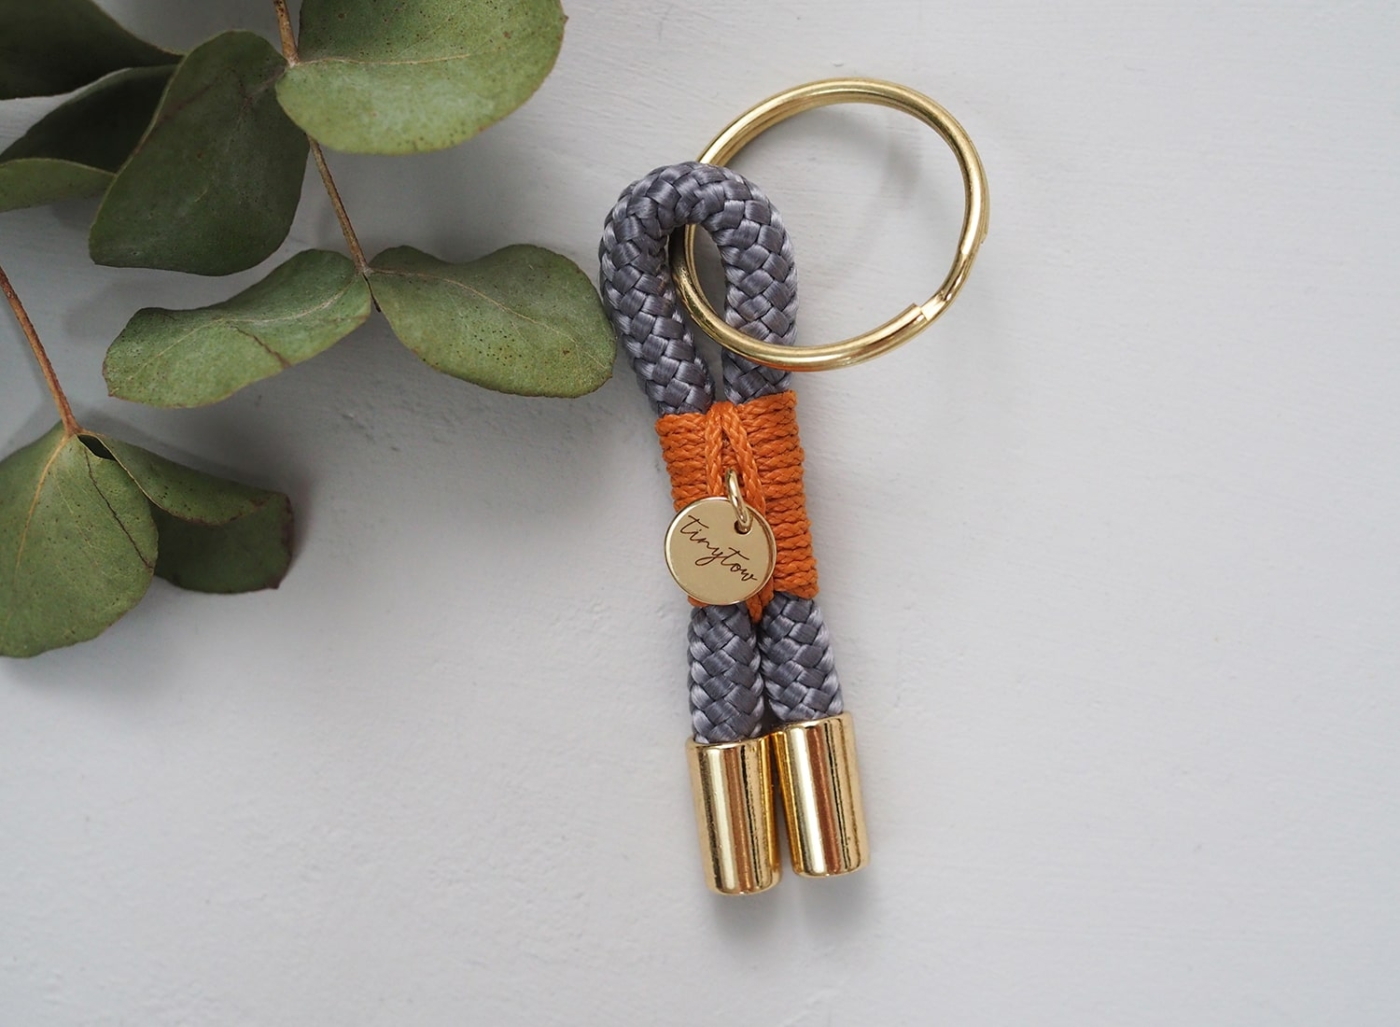 Schlüsselanhänger aus Tauseil in grau mit camelfarbener Umwickelung und goldenen Details.